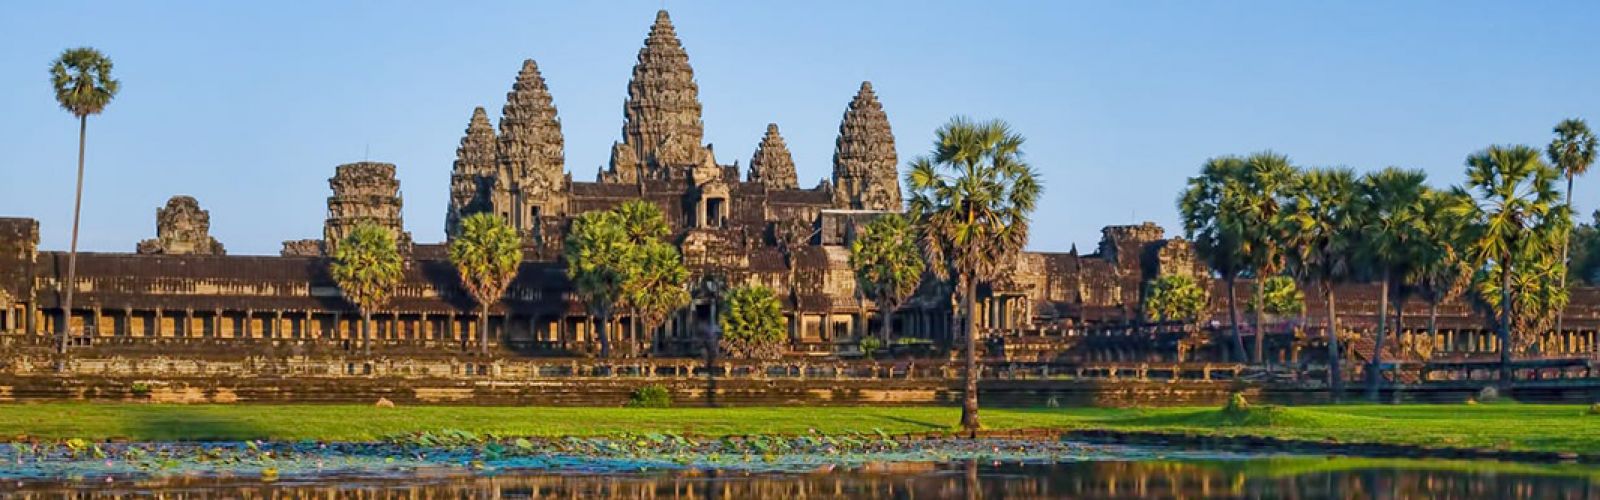 Cambodia History & Culture